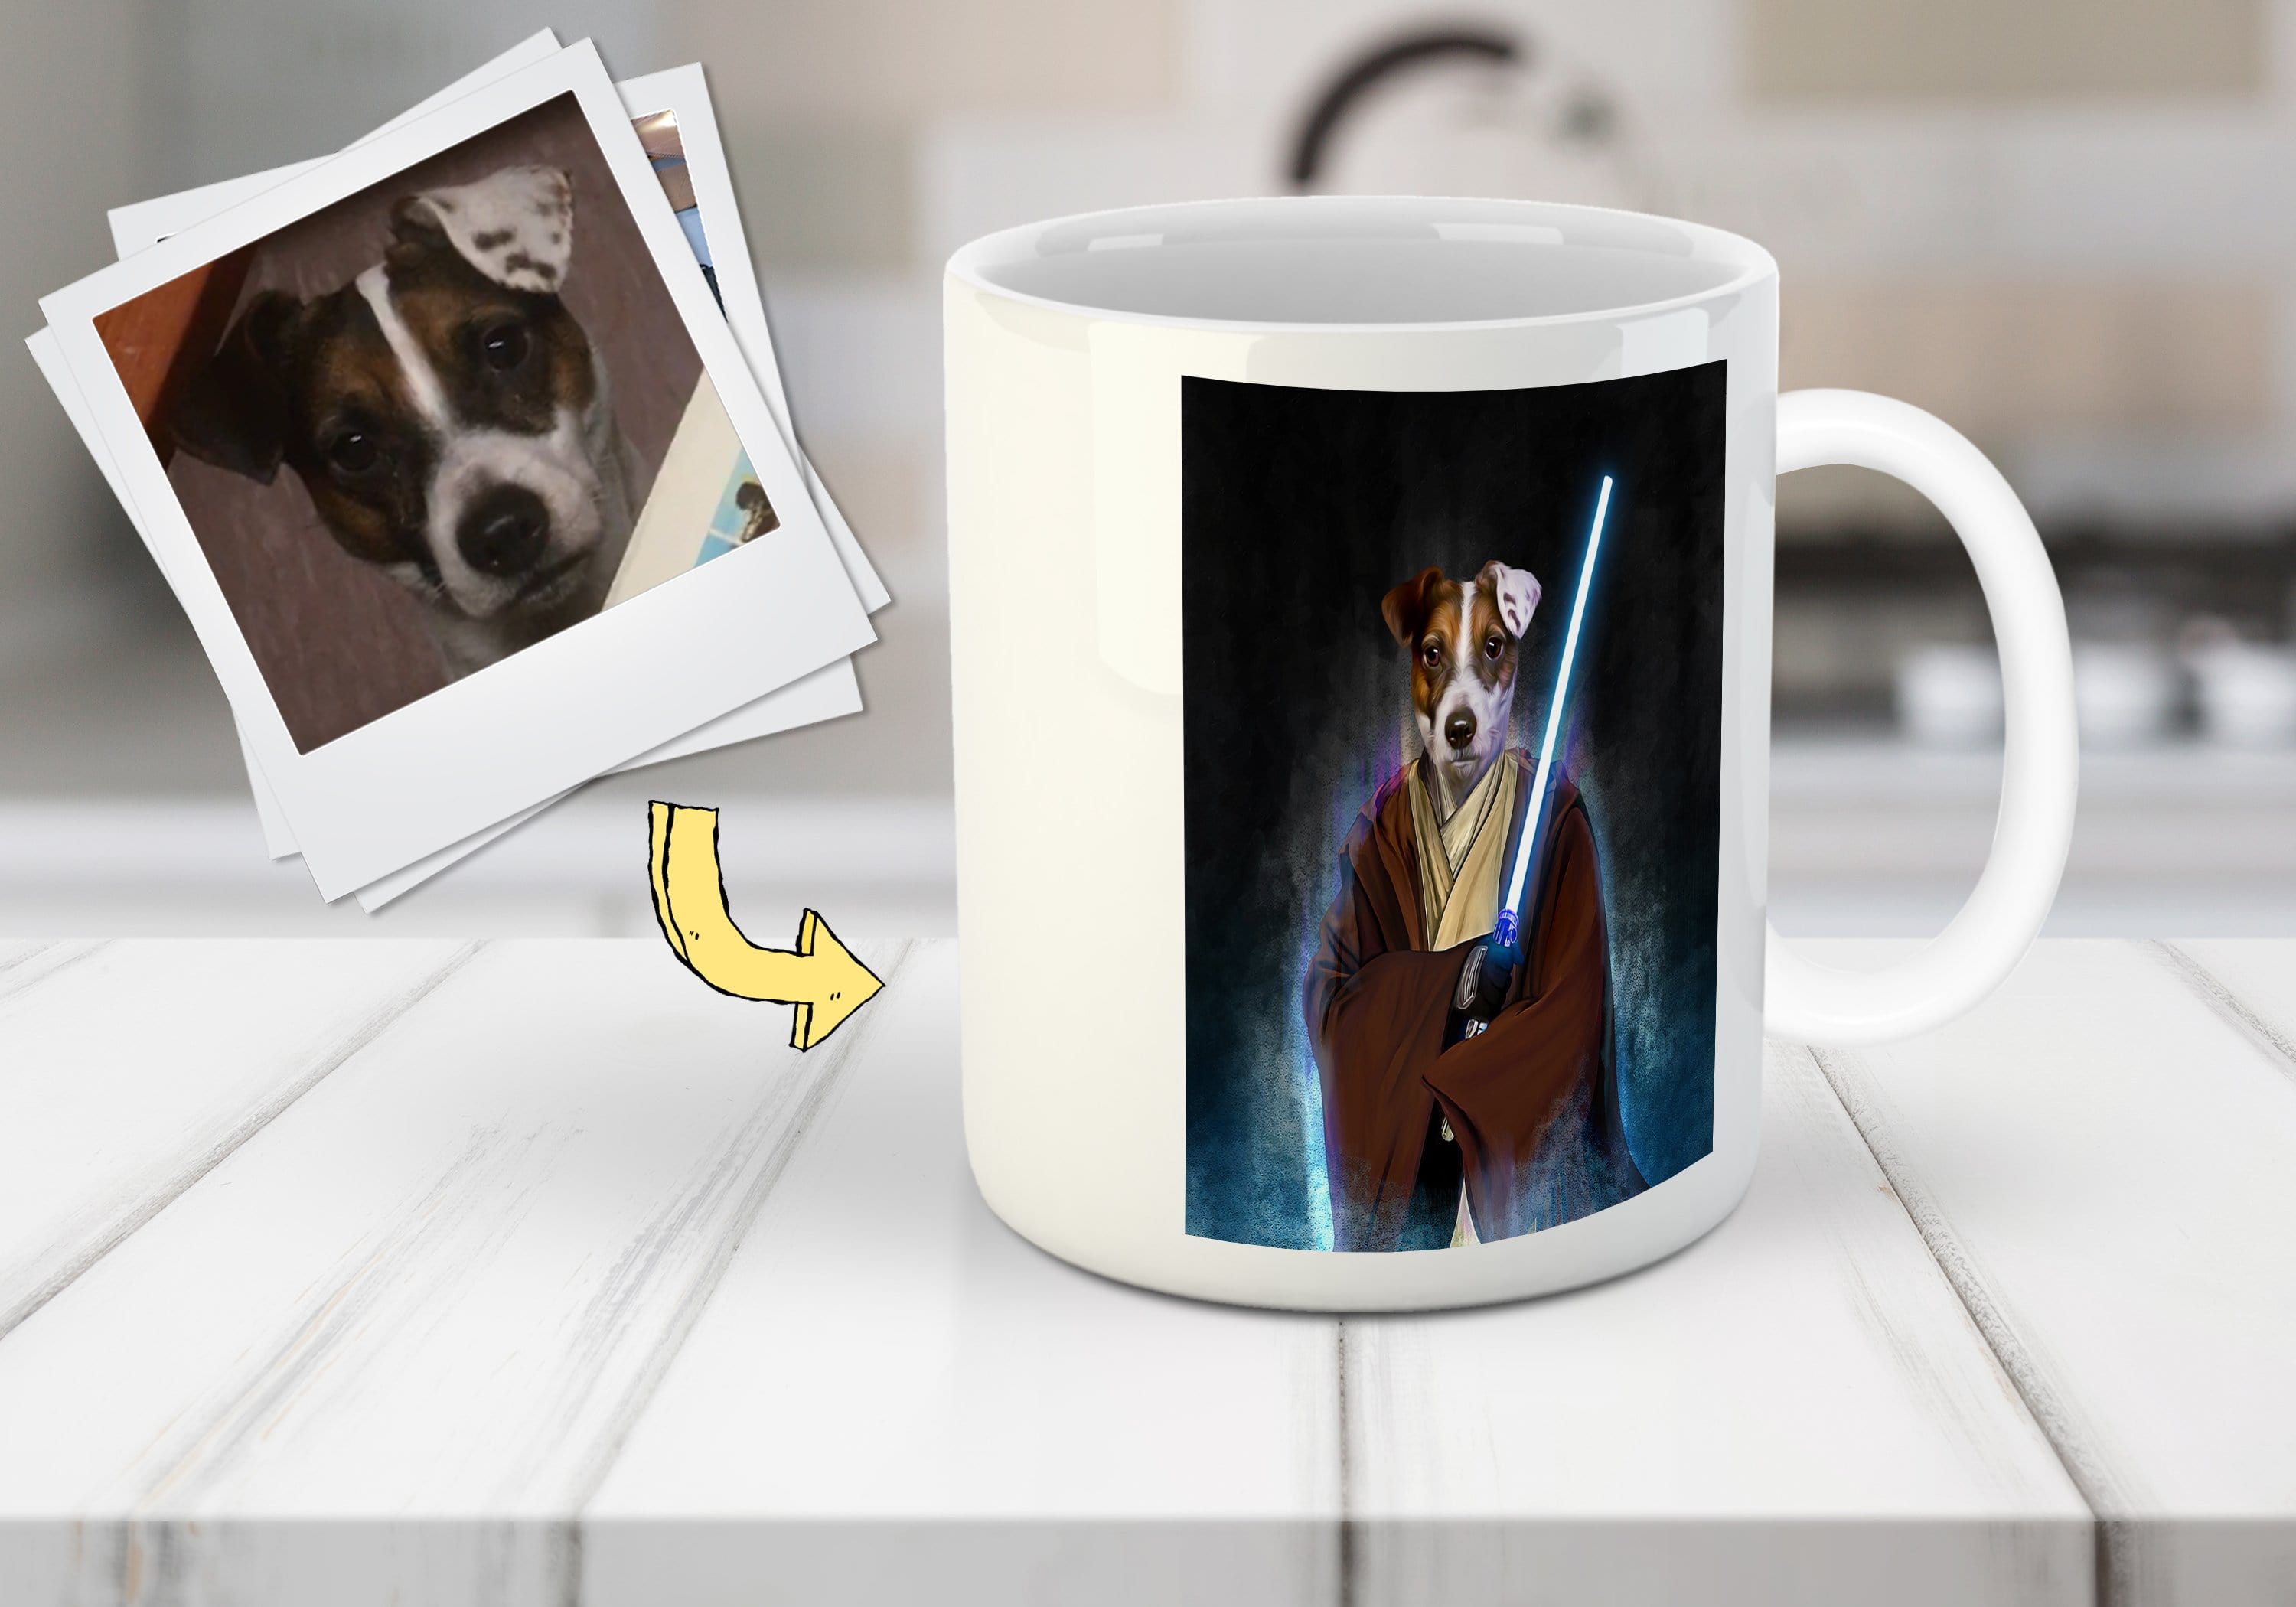 &#39;Doggo-Jedi&#39; Custom Pet Mug